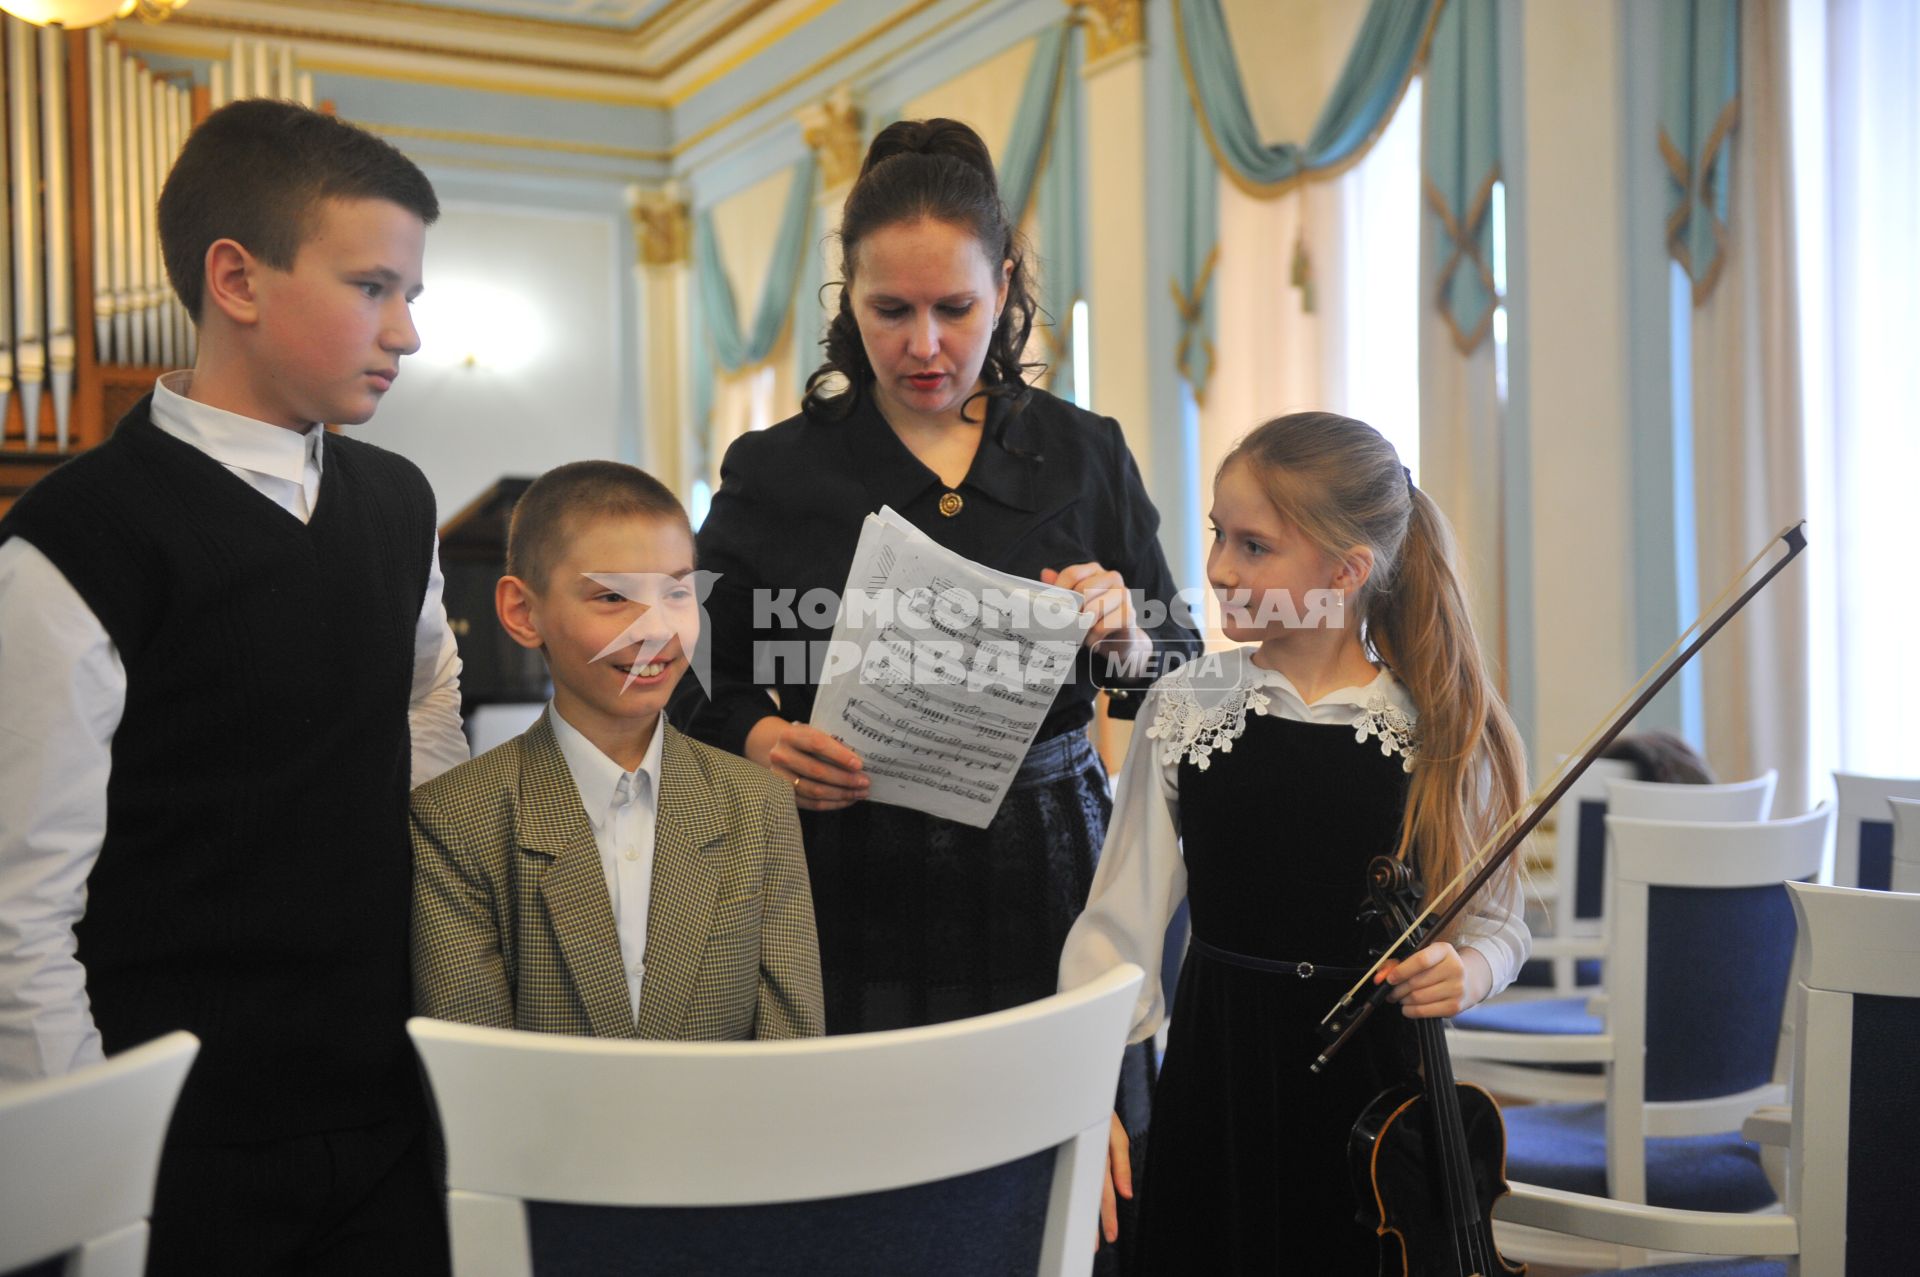 Оперная певица и депутат Госдумы Мария Максакова  прослушала  трех талантливых юных музыкантов из Донецка в Центральной музыкальной школе Москвы.